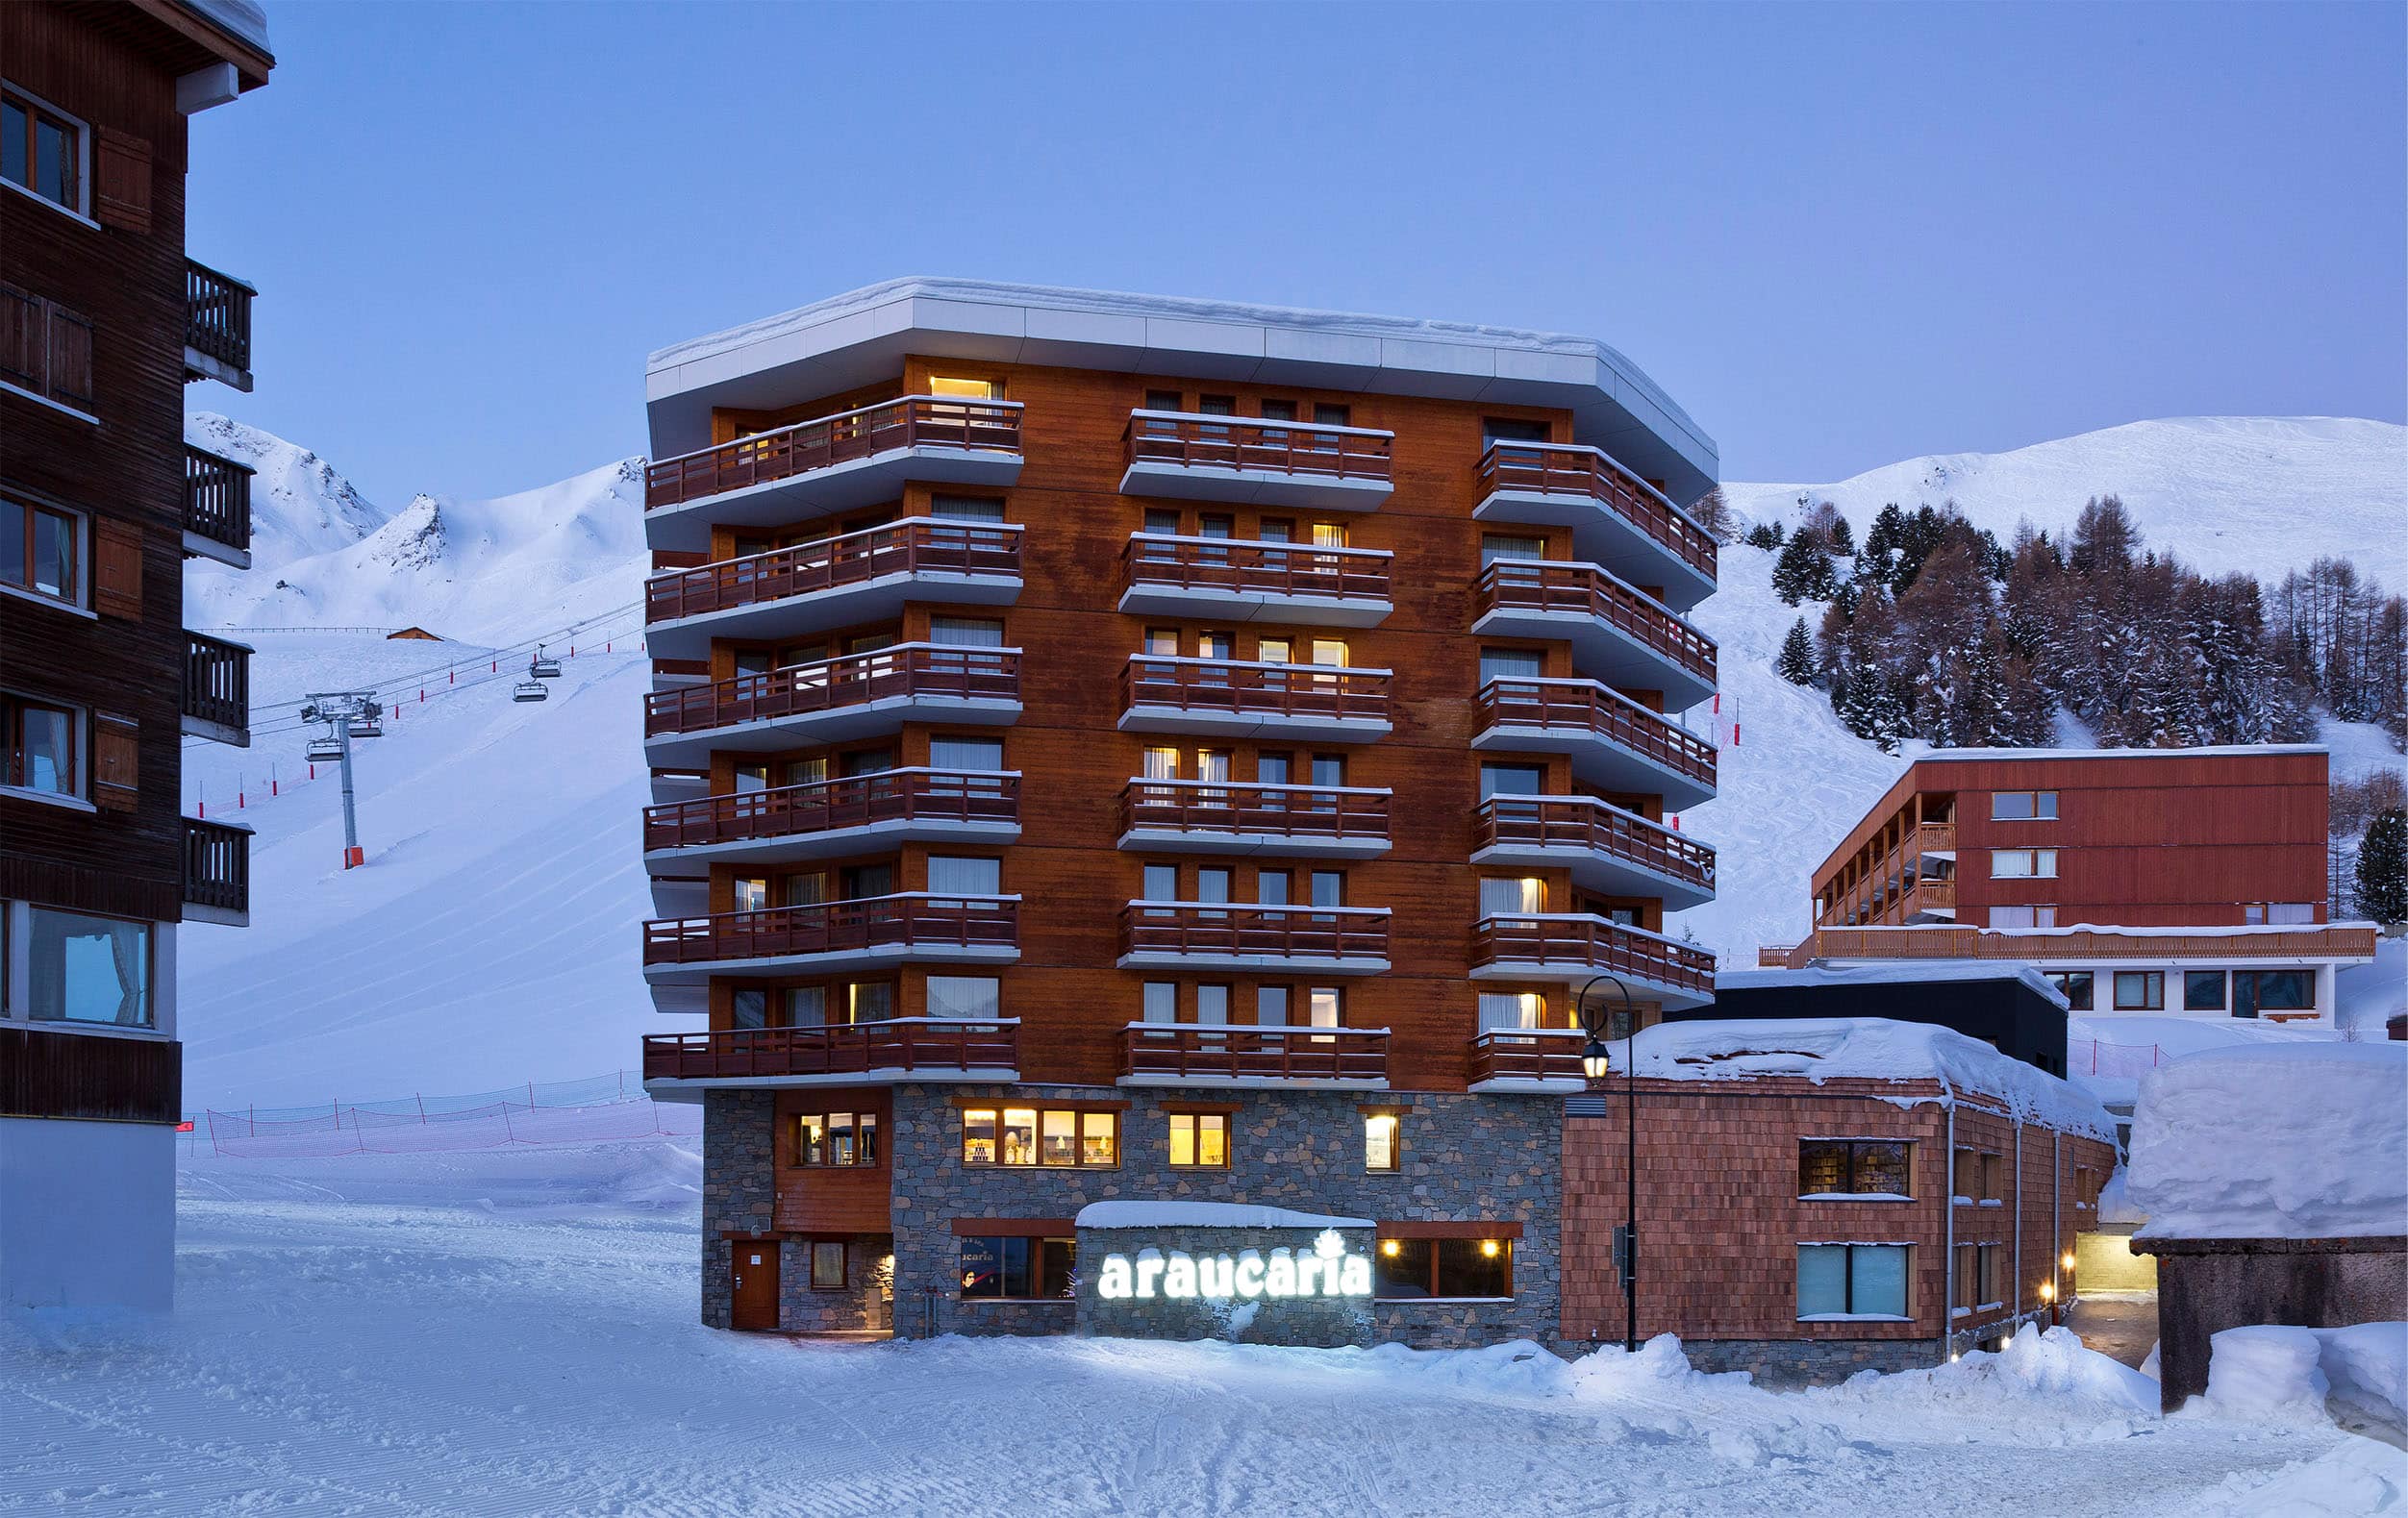 Découvrez pour de vos évènements professionnels en Savoie, Araucaria Hôtel & Spa vous accueille dans une ambiance chic et chaleureuse.